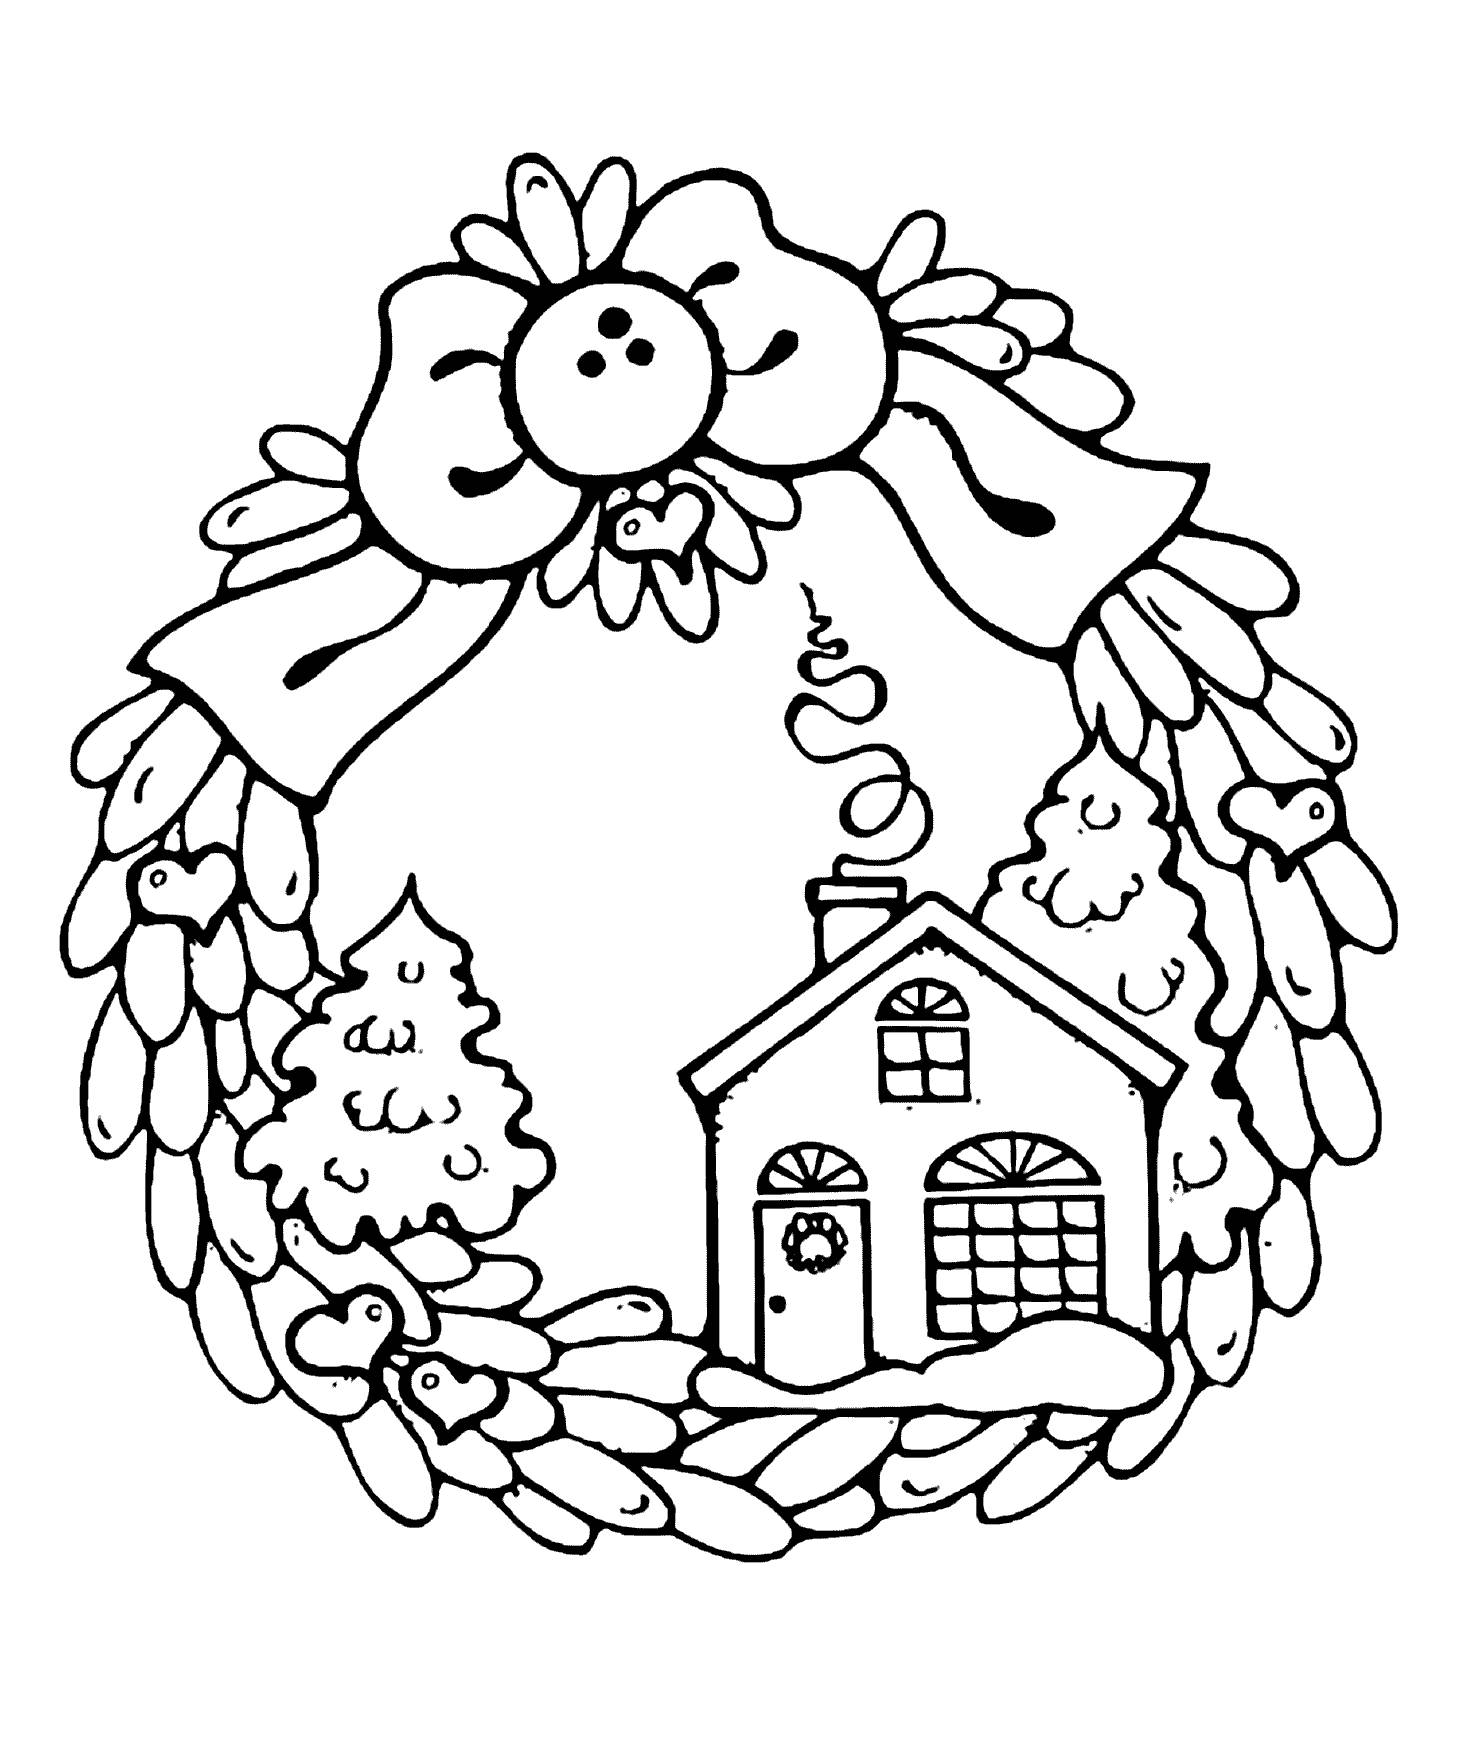 Wreath with a house